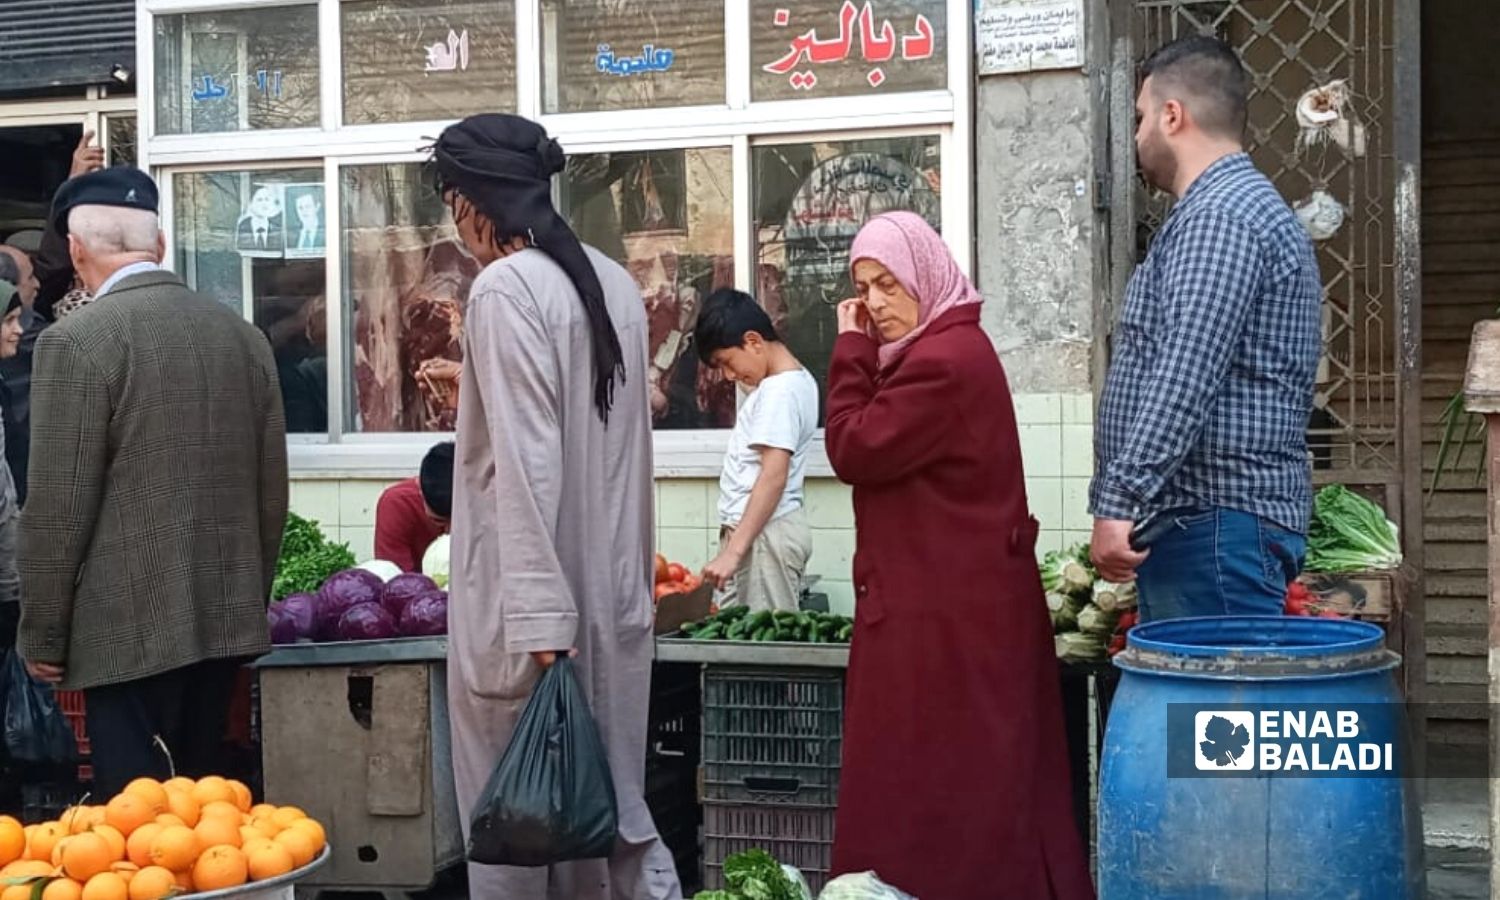 أشخاص يتجولون في سوق "أوغاريت" بين حيي العوينة وصليبة في مدينة اللاذقية - 2 من نيسان 2022 (عنب بلدي)